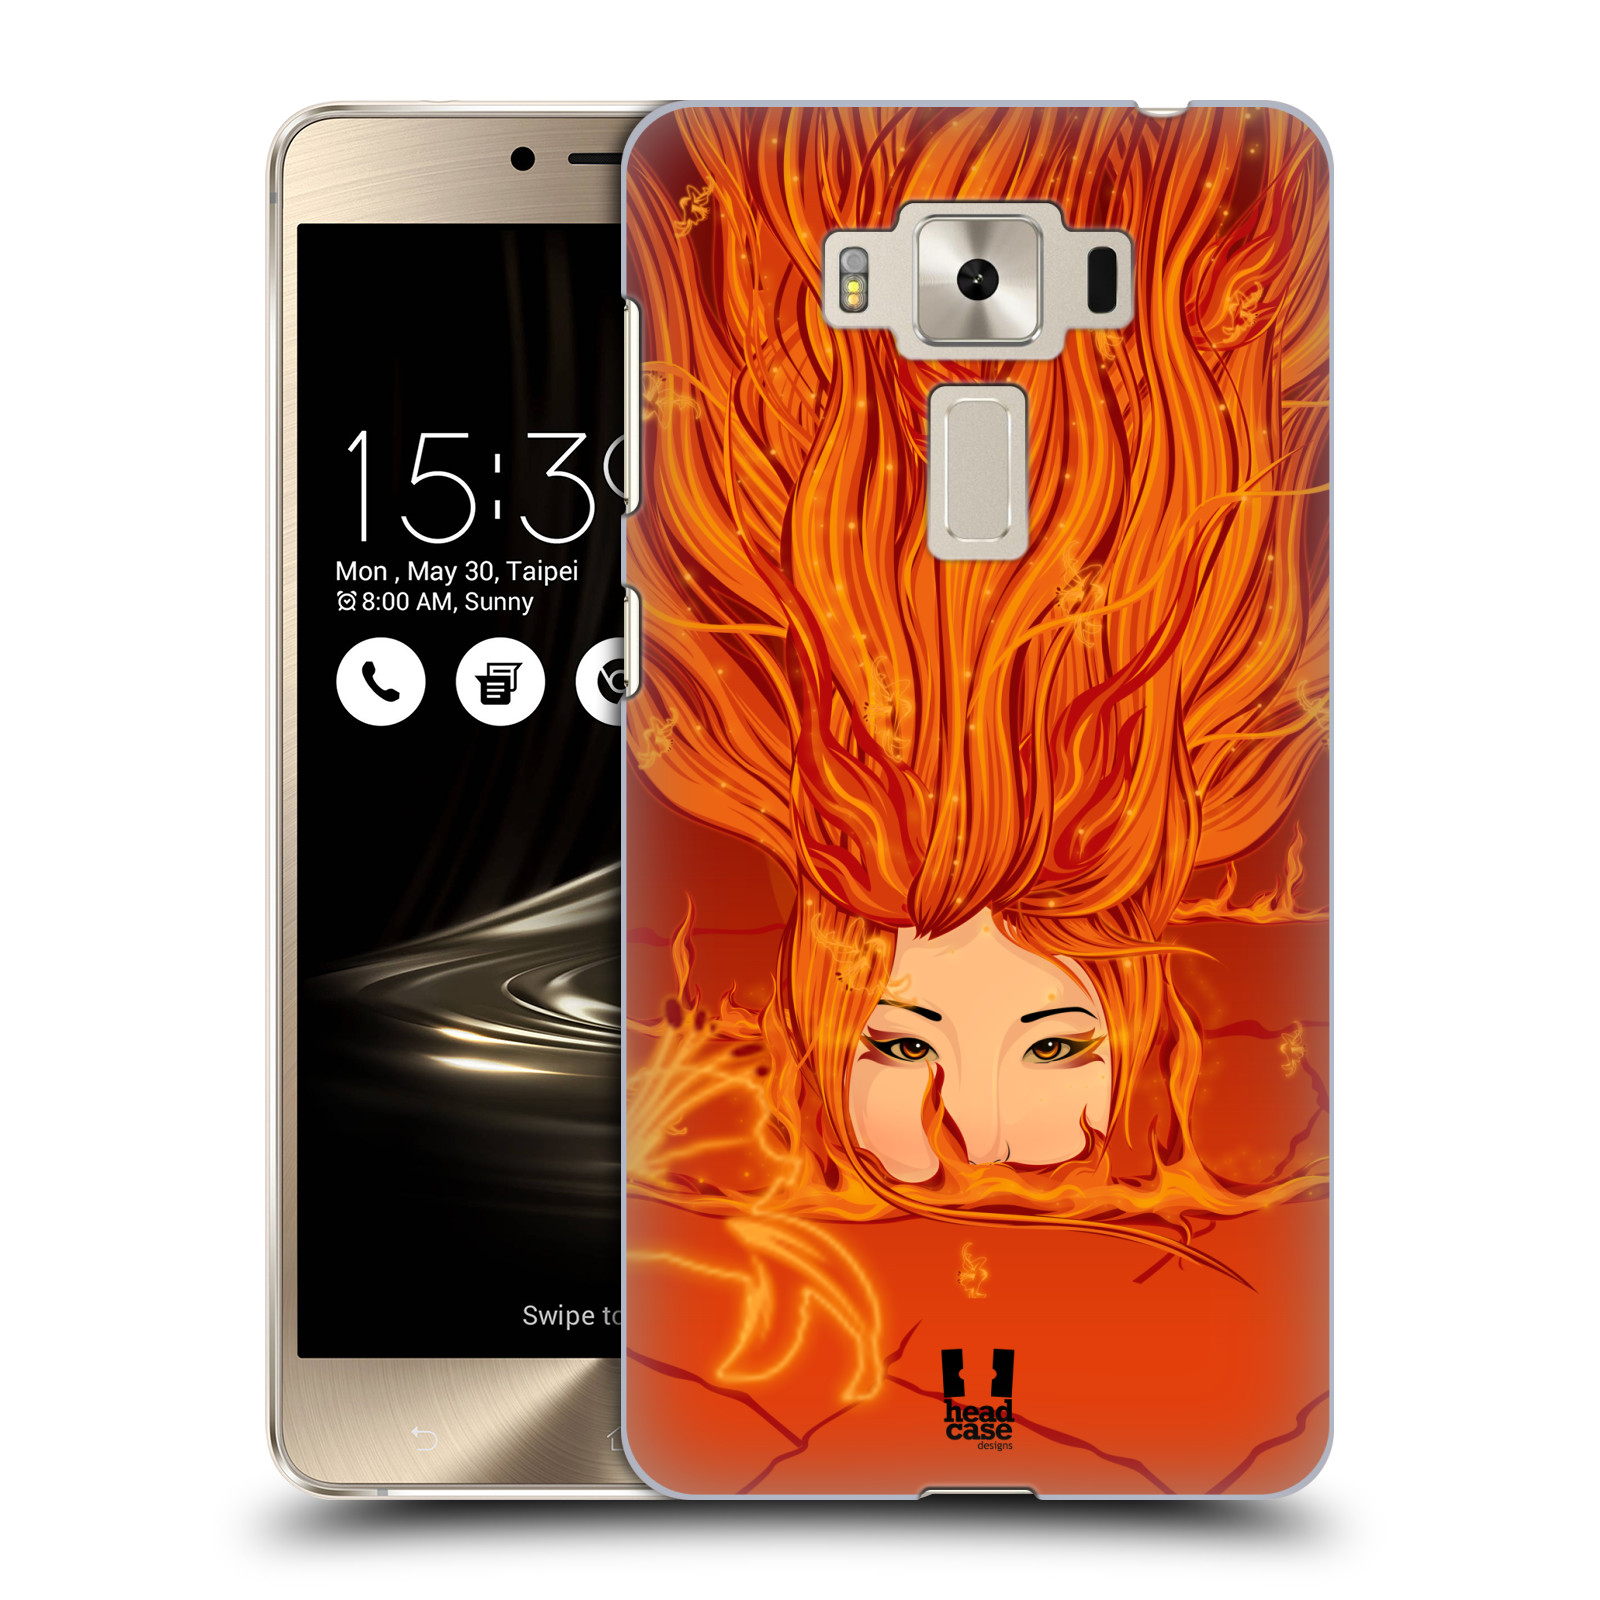 HEAD CASE plastový obal na mobil Asus Zenfone 3 DELUXE ZS550KL vzor Žena element OHEŇ oranžová